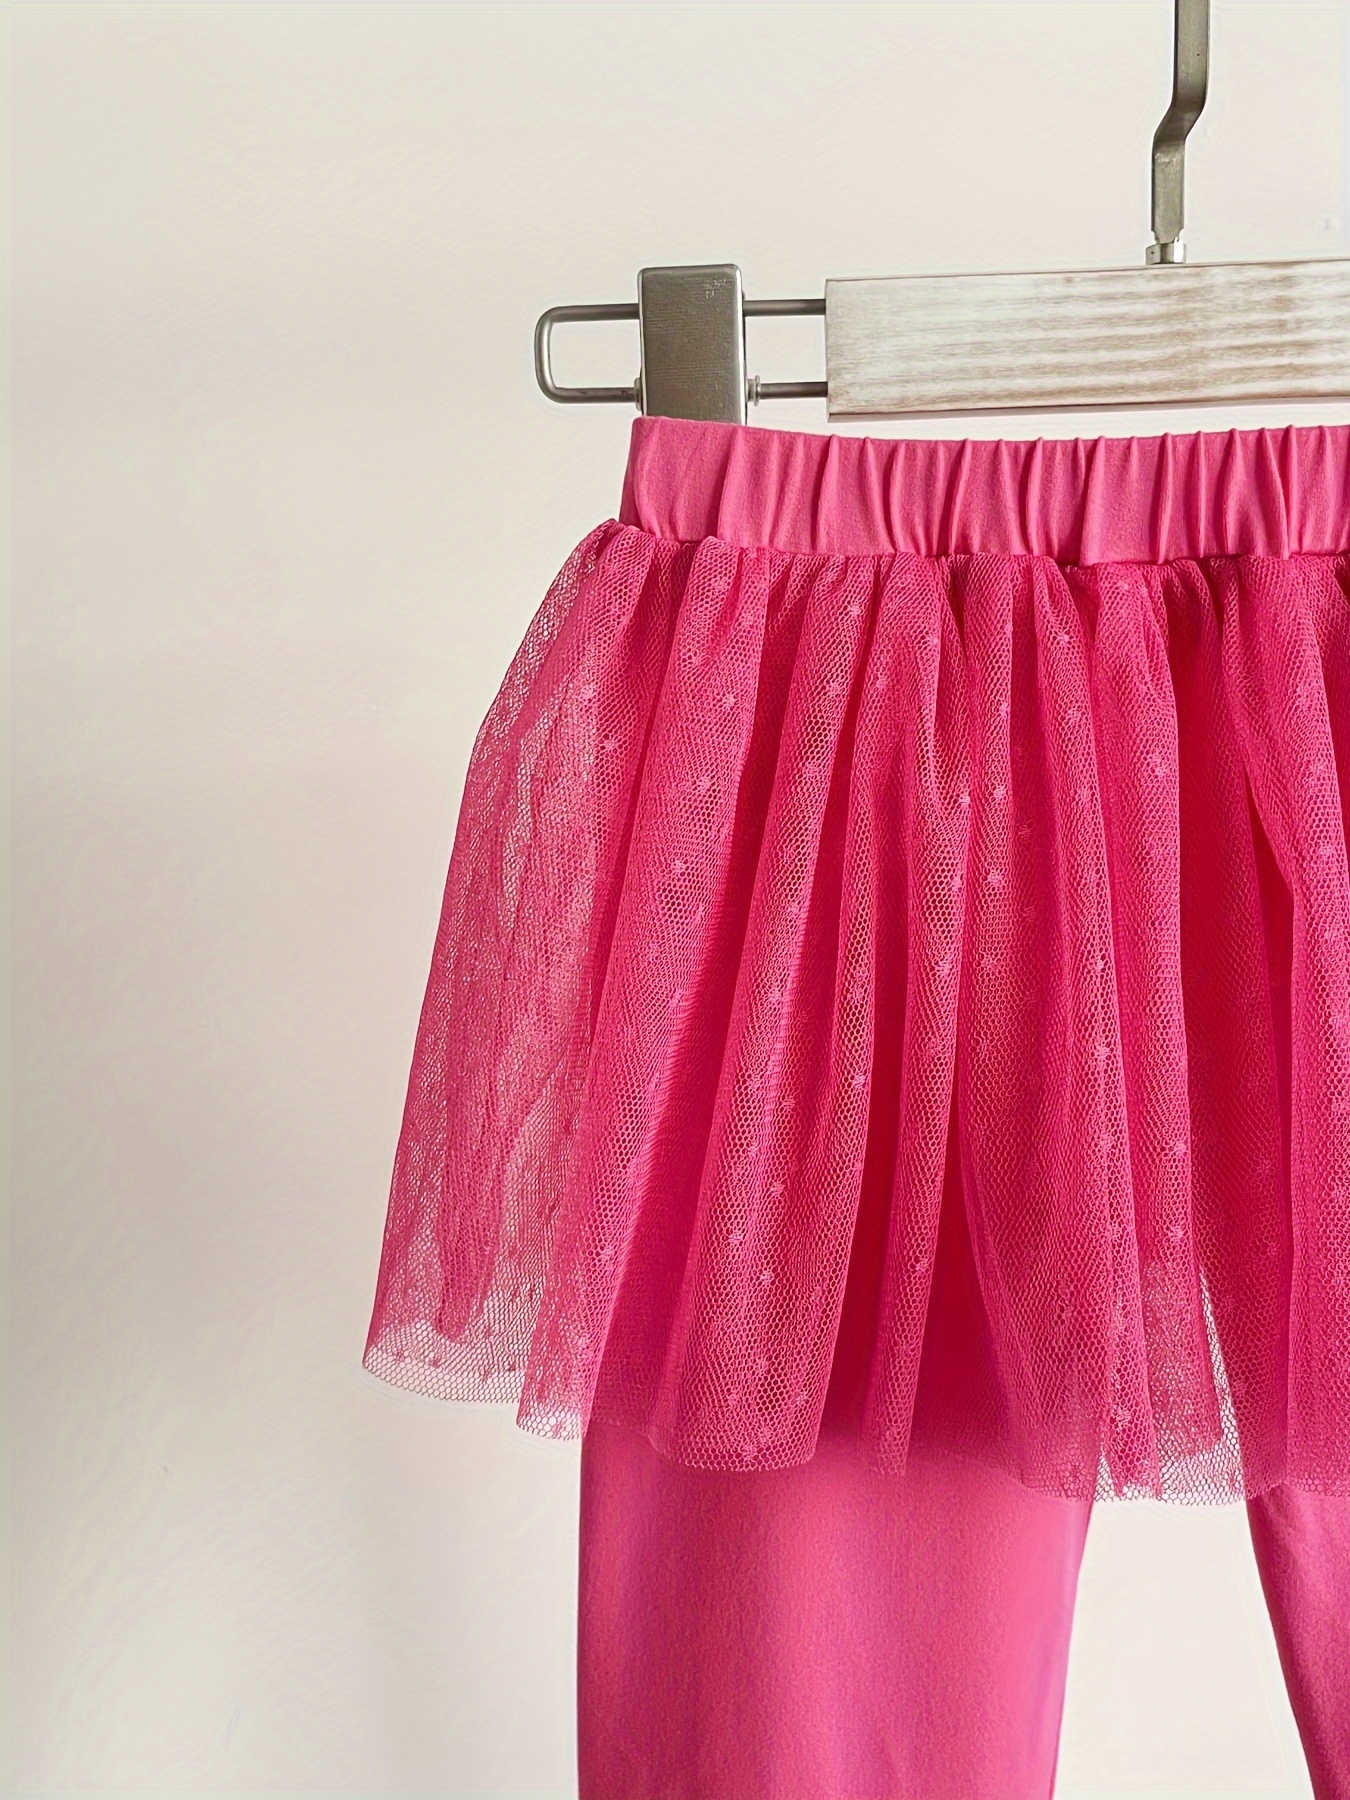 Hot Pink Girls Skirt Leggings